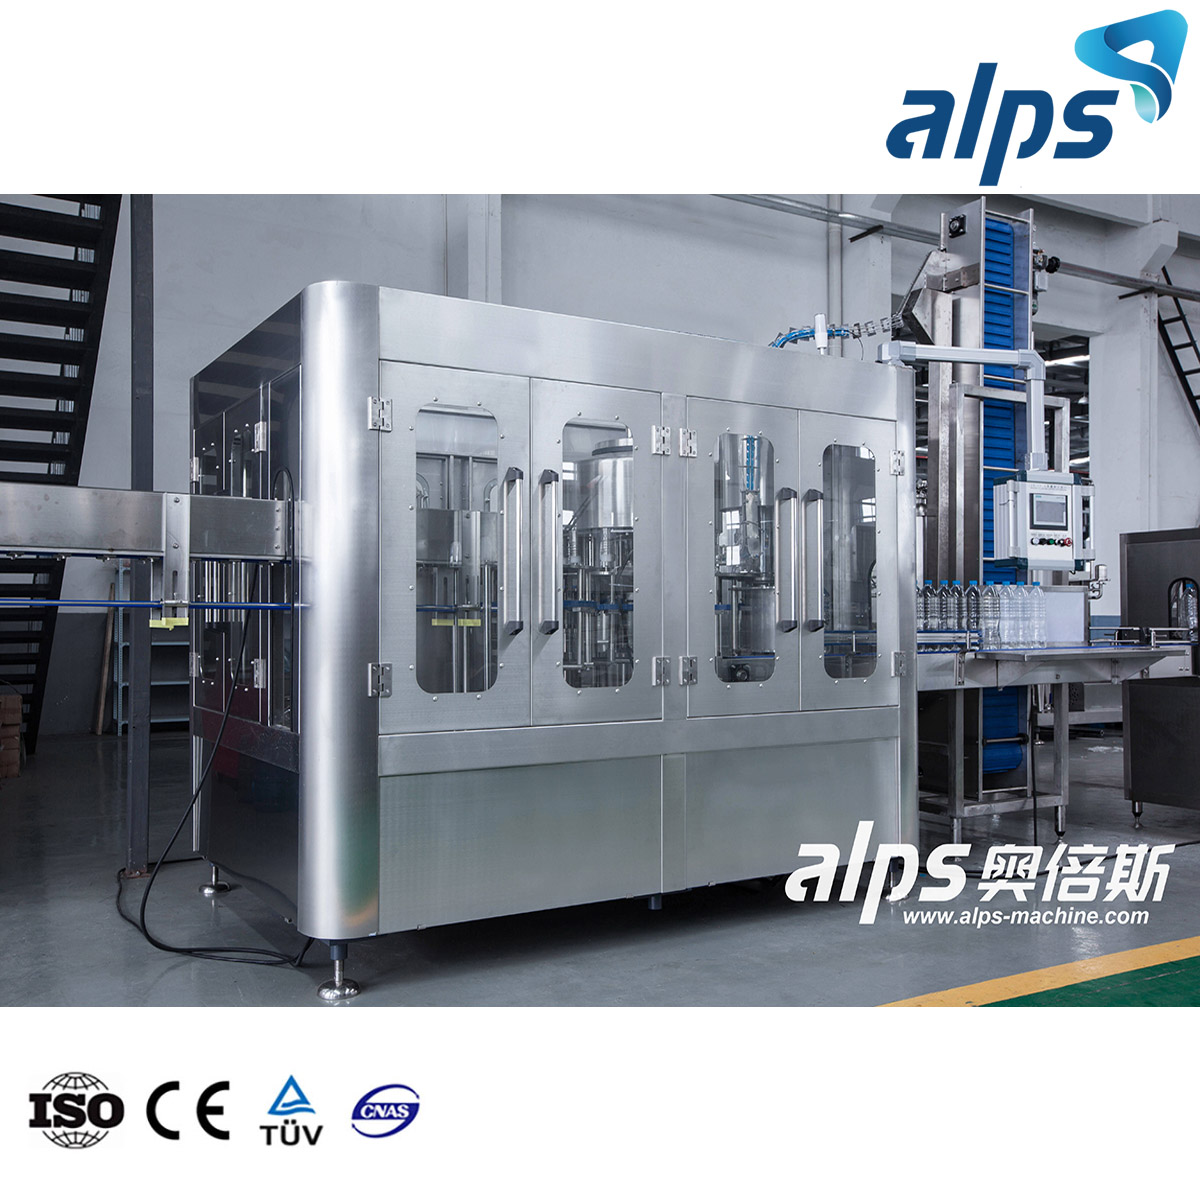 Fabricant de machines de remplissage de bouteilles Alps Machine de remplissage d'eau 3 en 1 12 Machine de remplissage de seau de yaourt